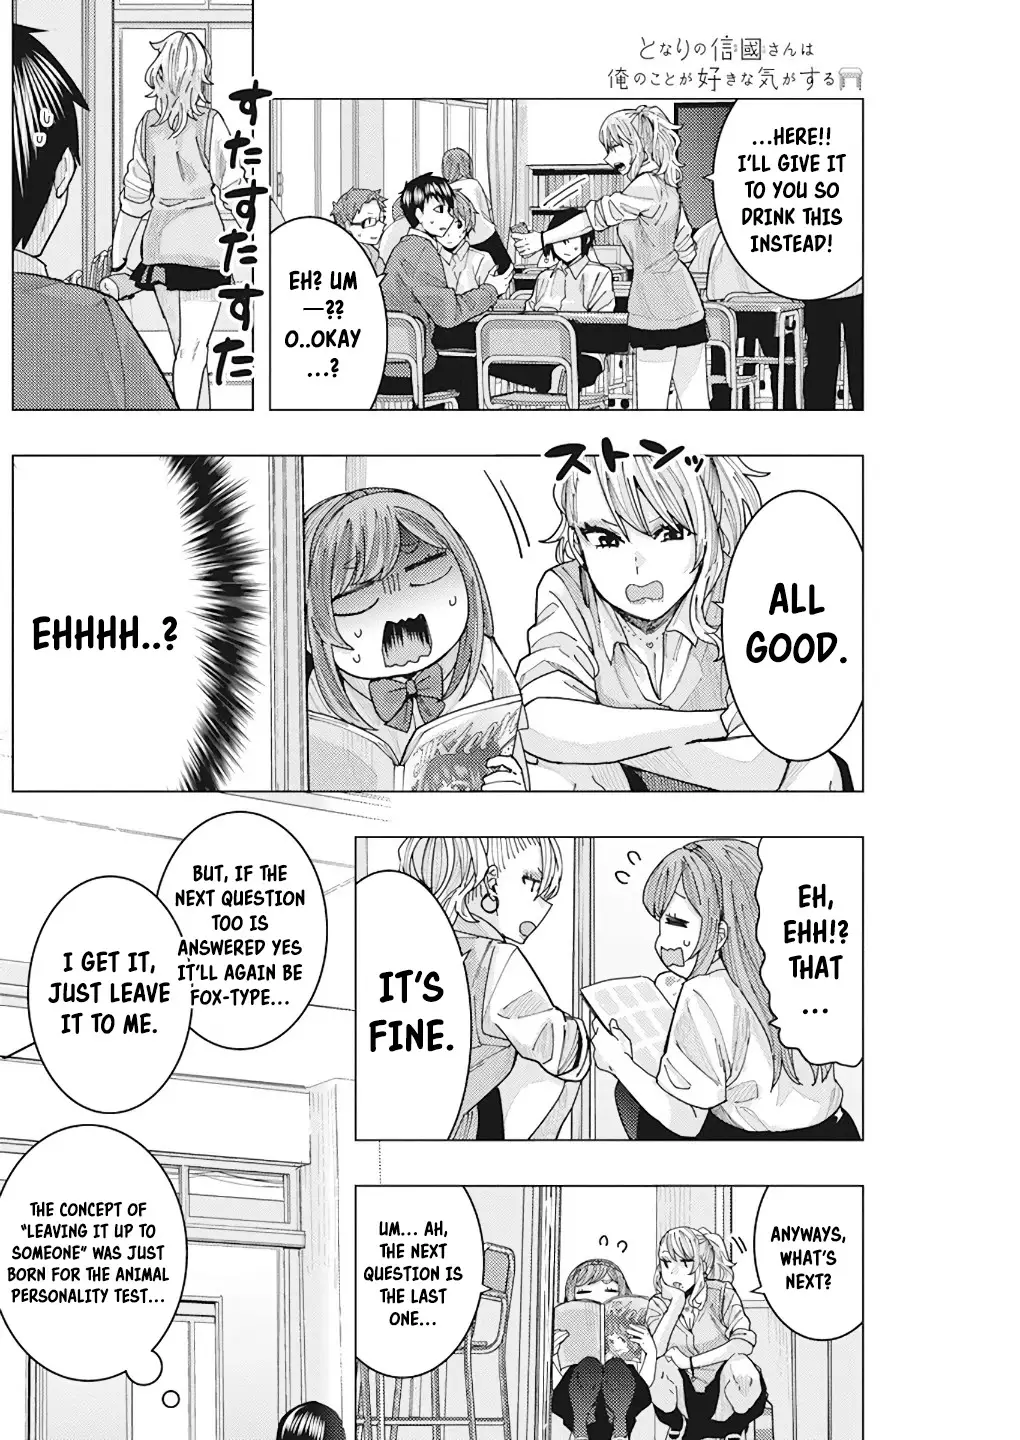 "nobukuni-San" Does She Like Me? - 14 page 14-c6f8975e